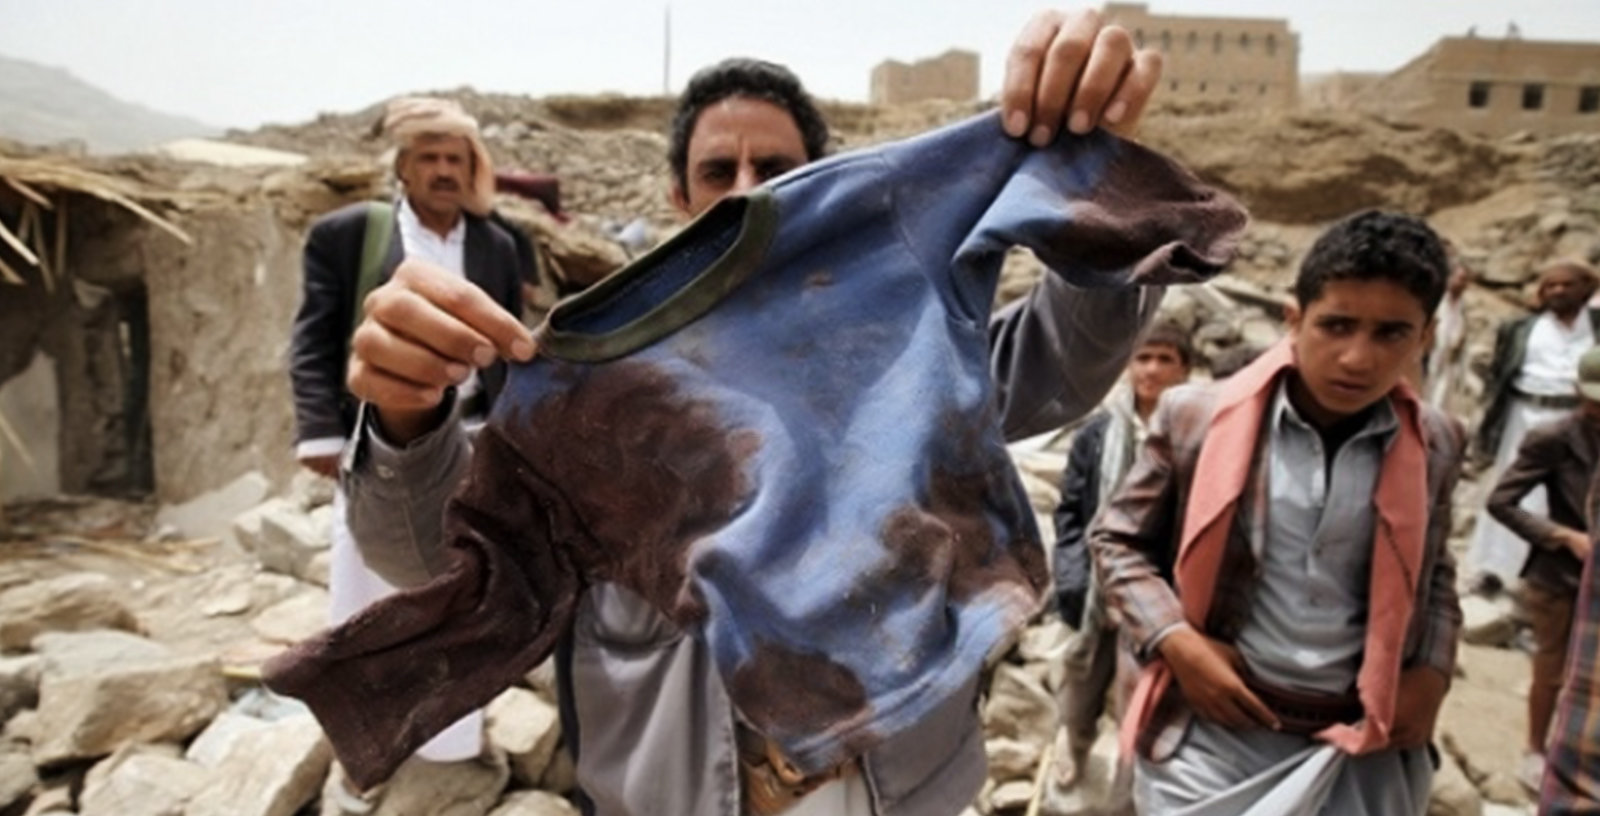 dead Yemen child shirt